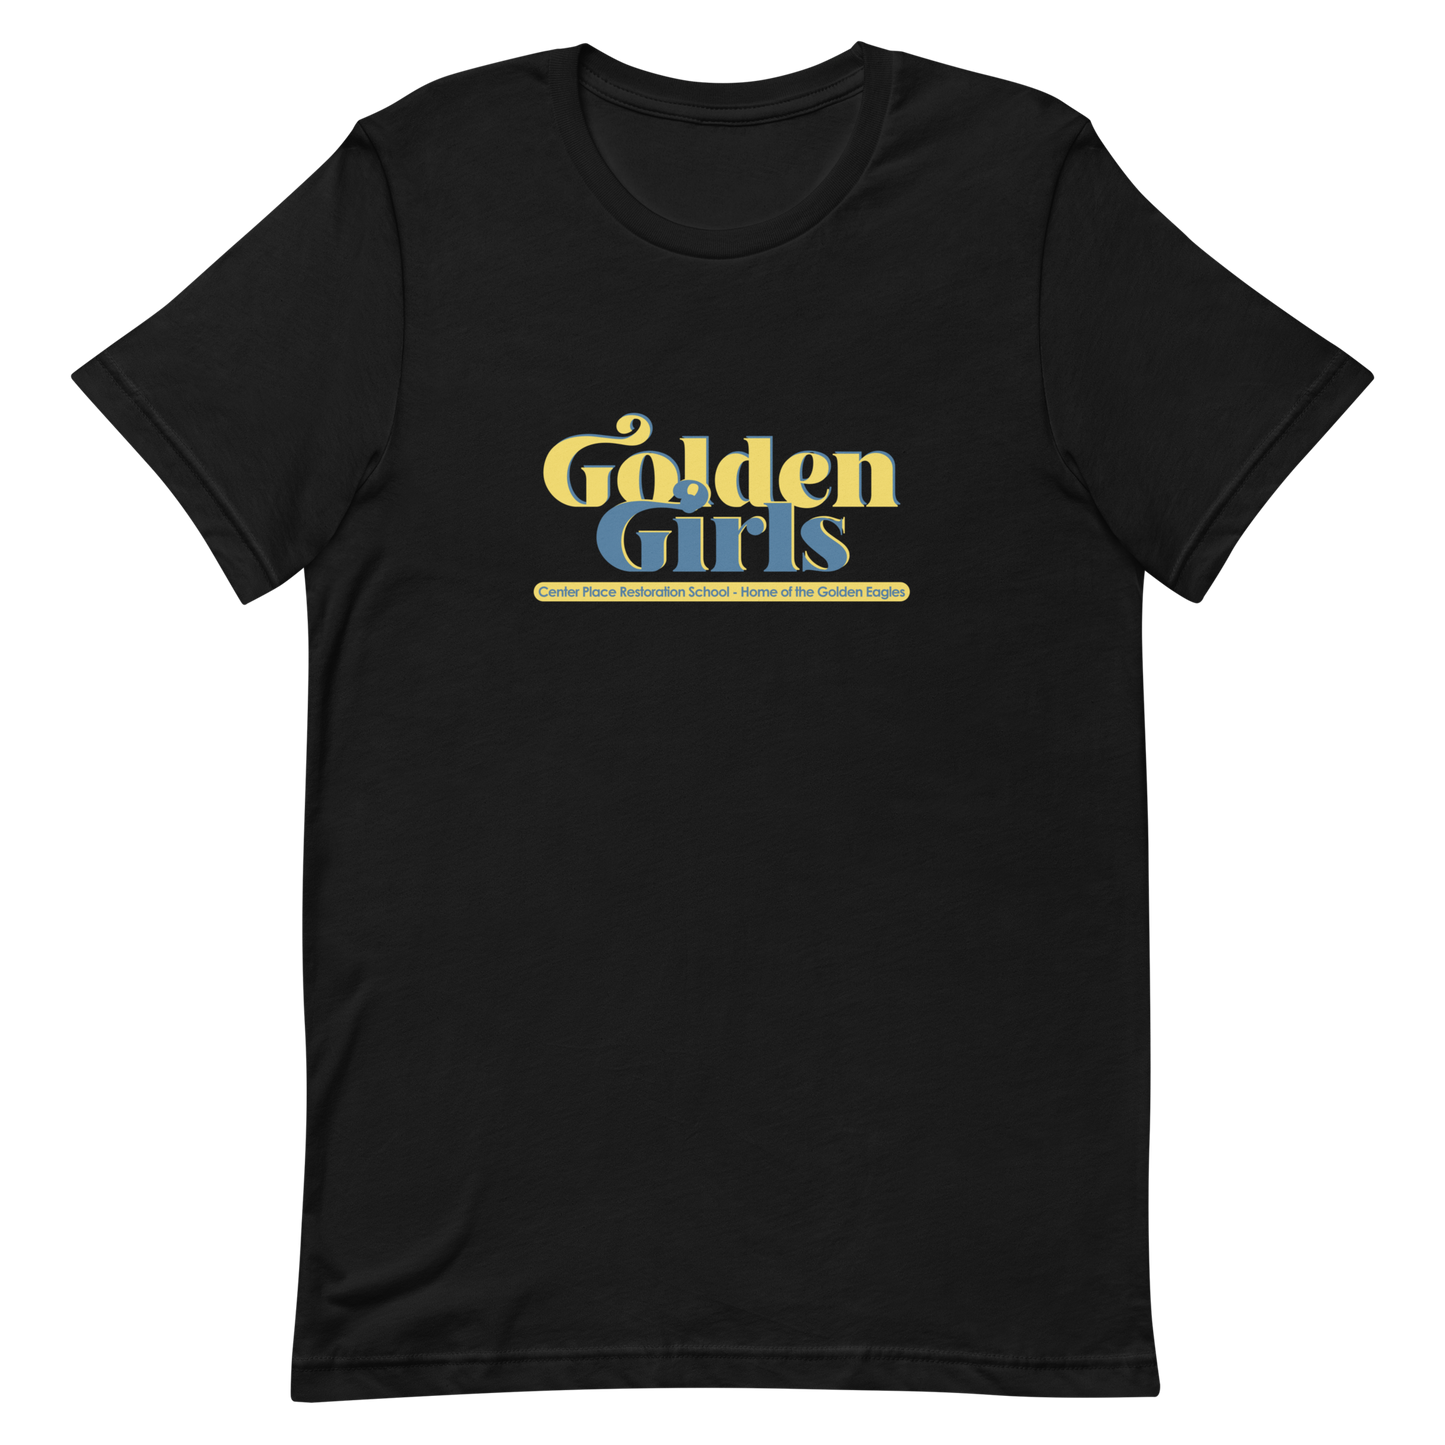 Golden Girls shirt